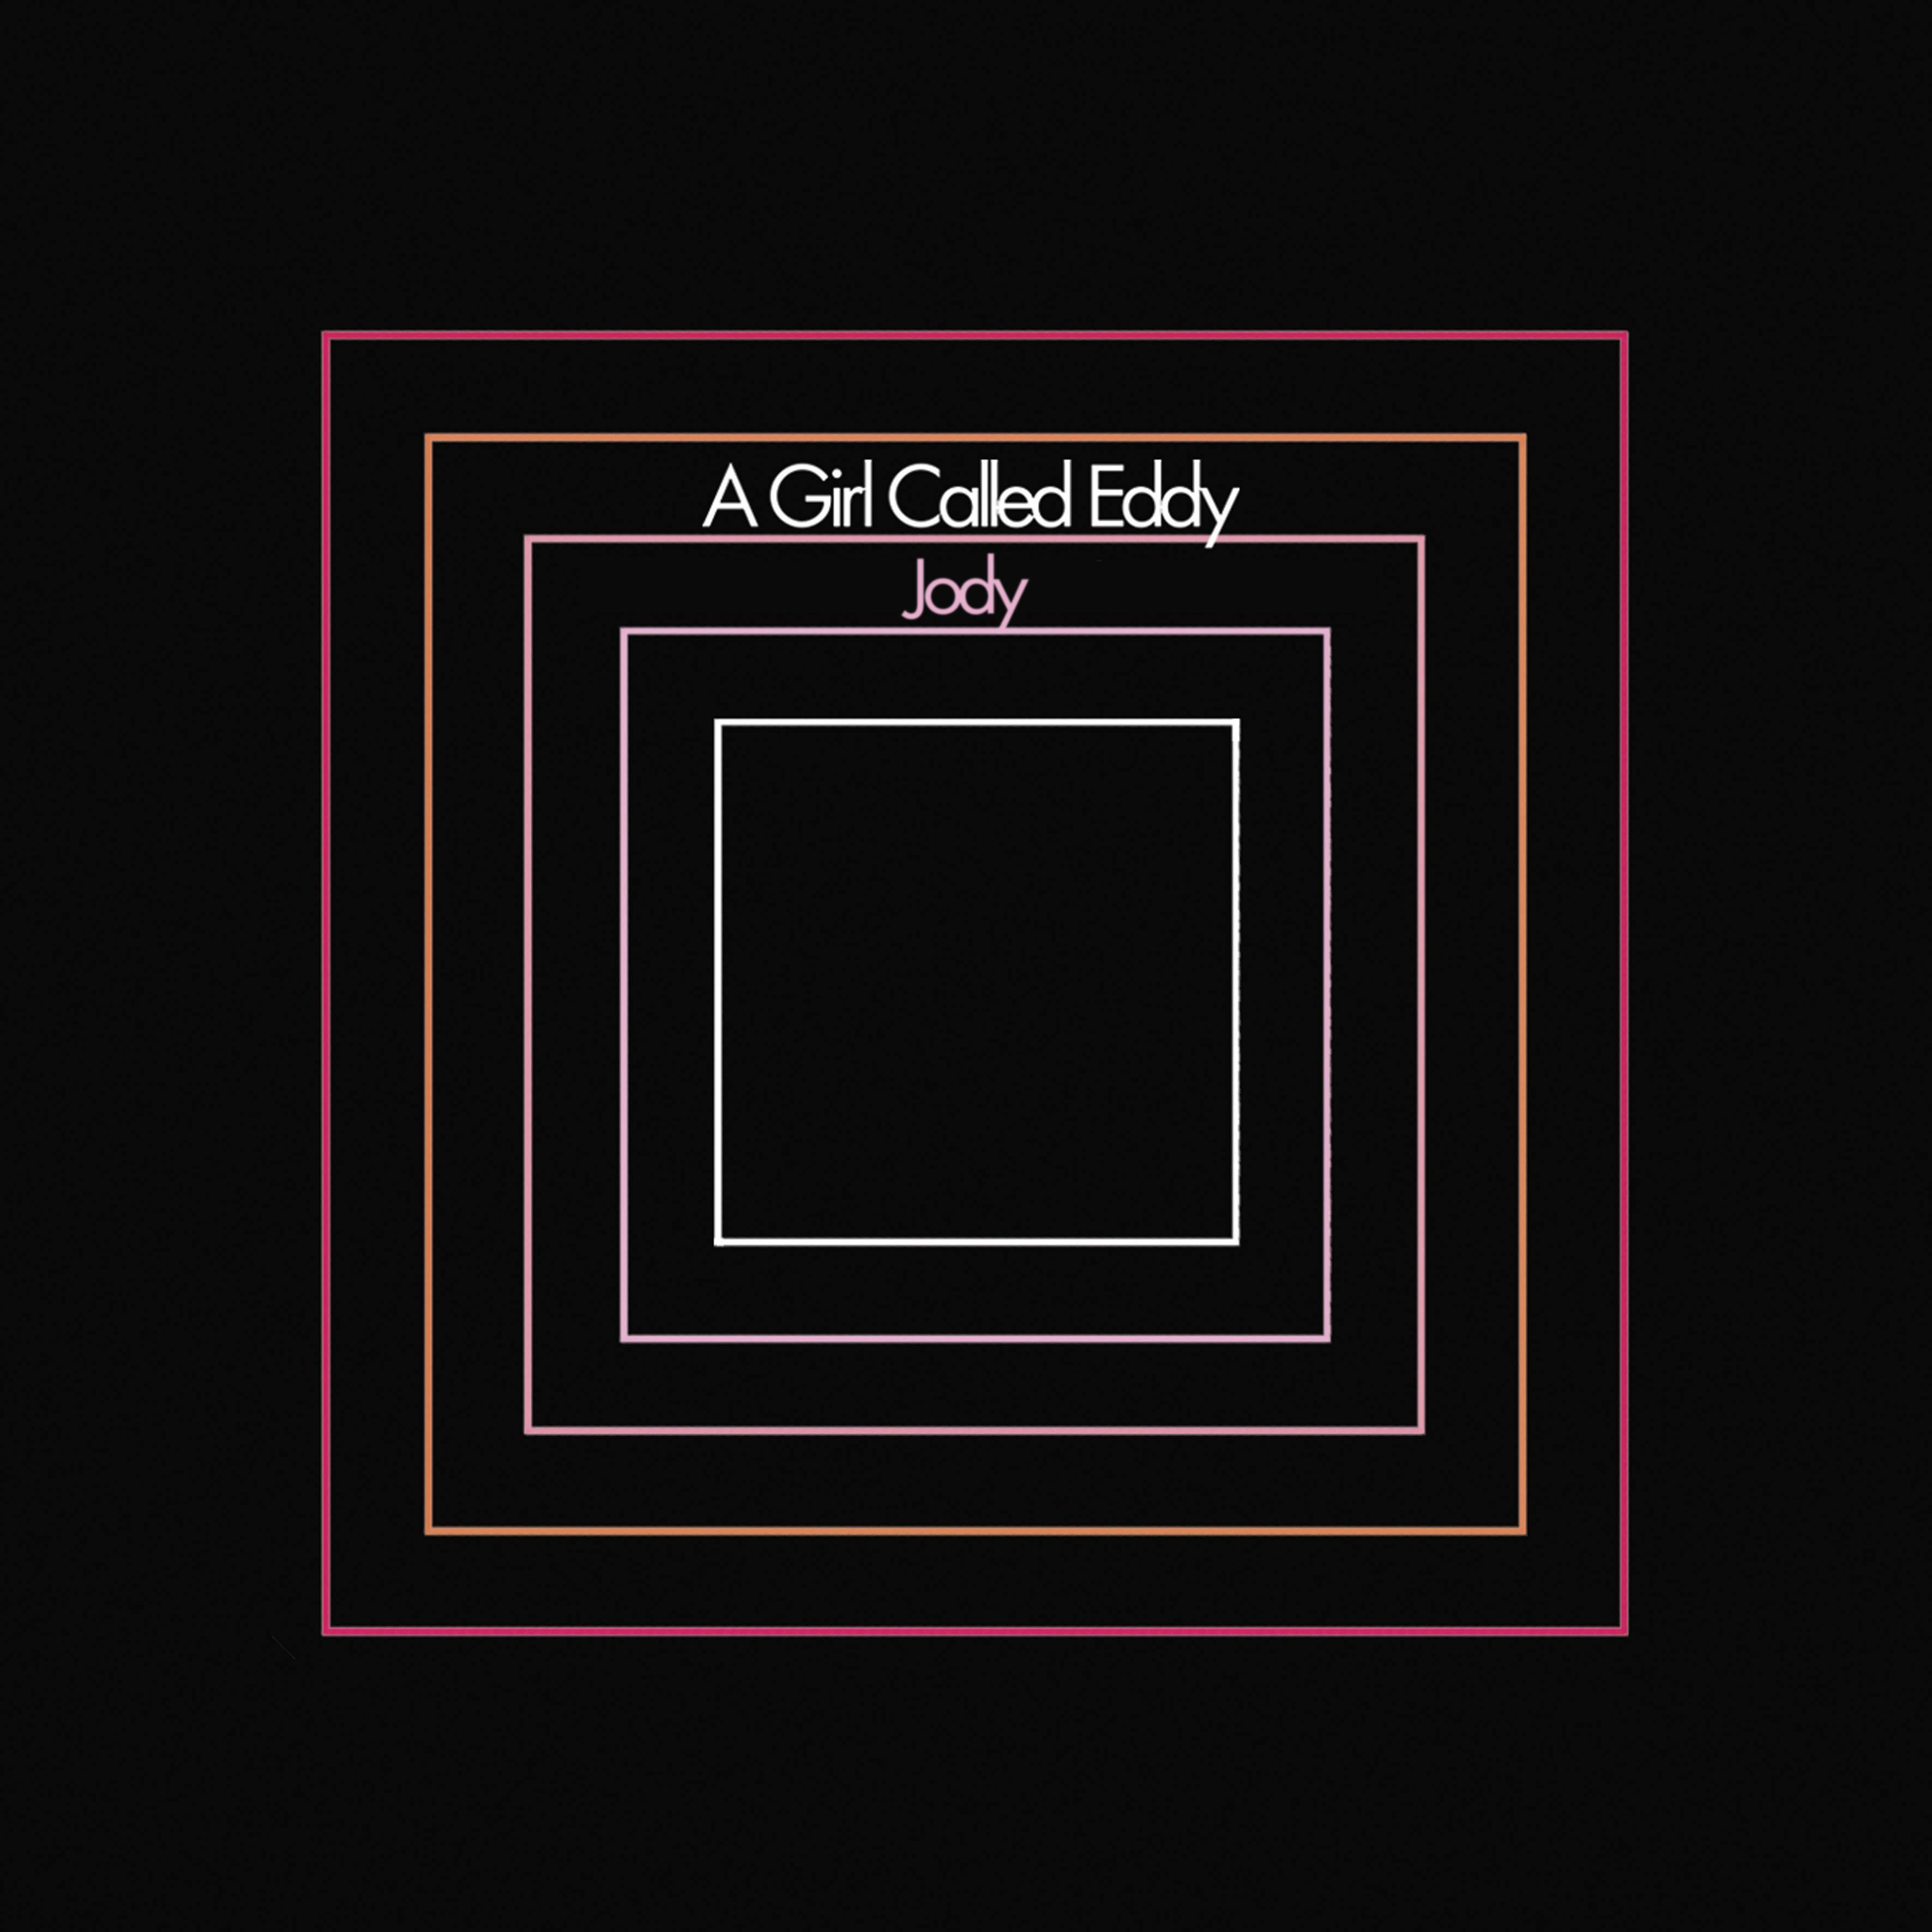 A Girl Called Eddy "Jody" Digital Single